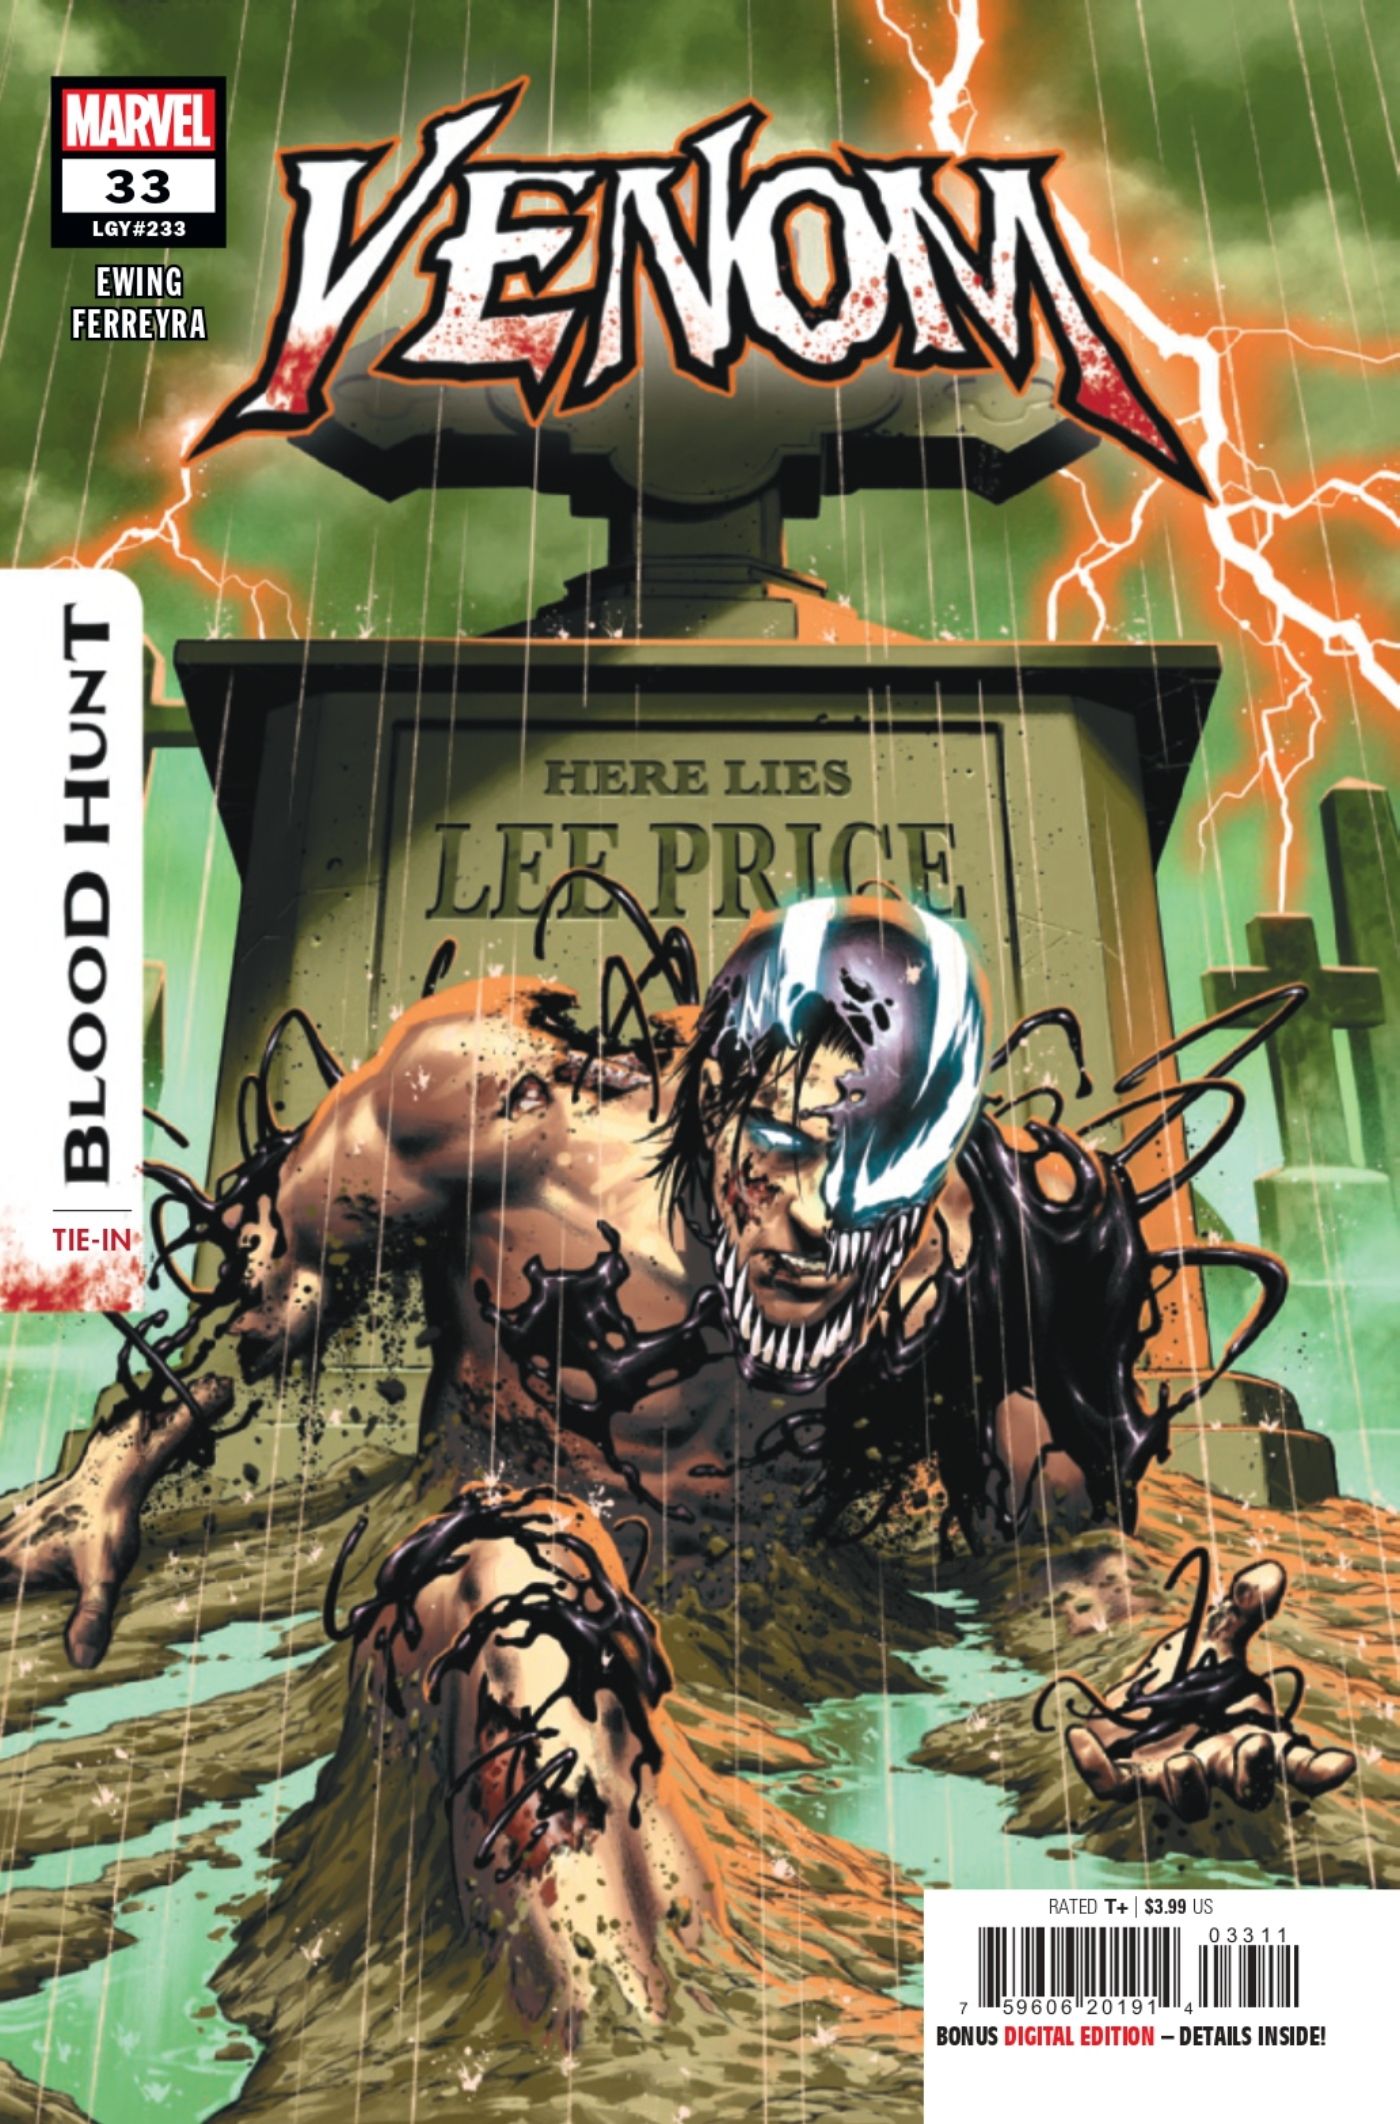 Capa de Venom #33 com Venom possuindo o cadáver de Lee Price.